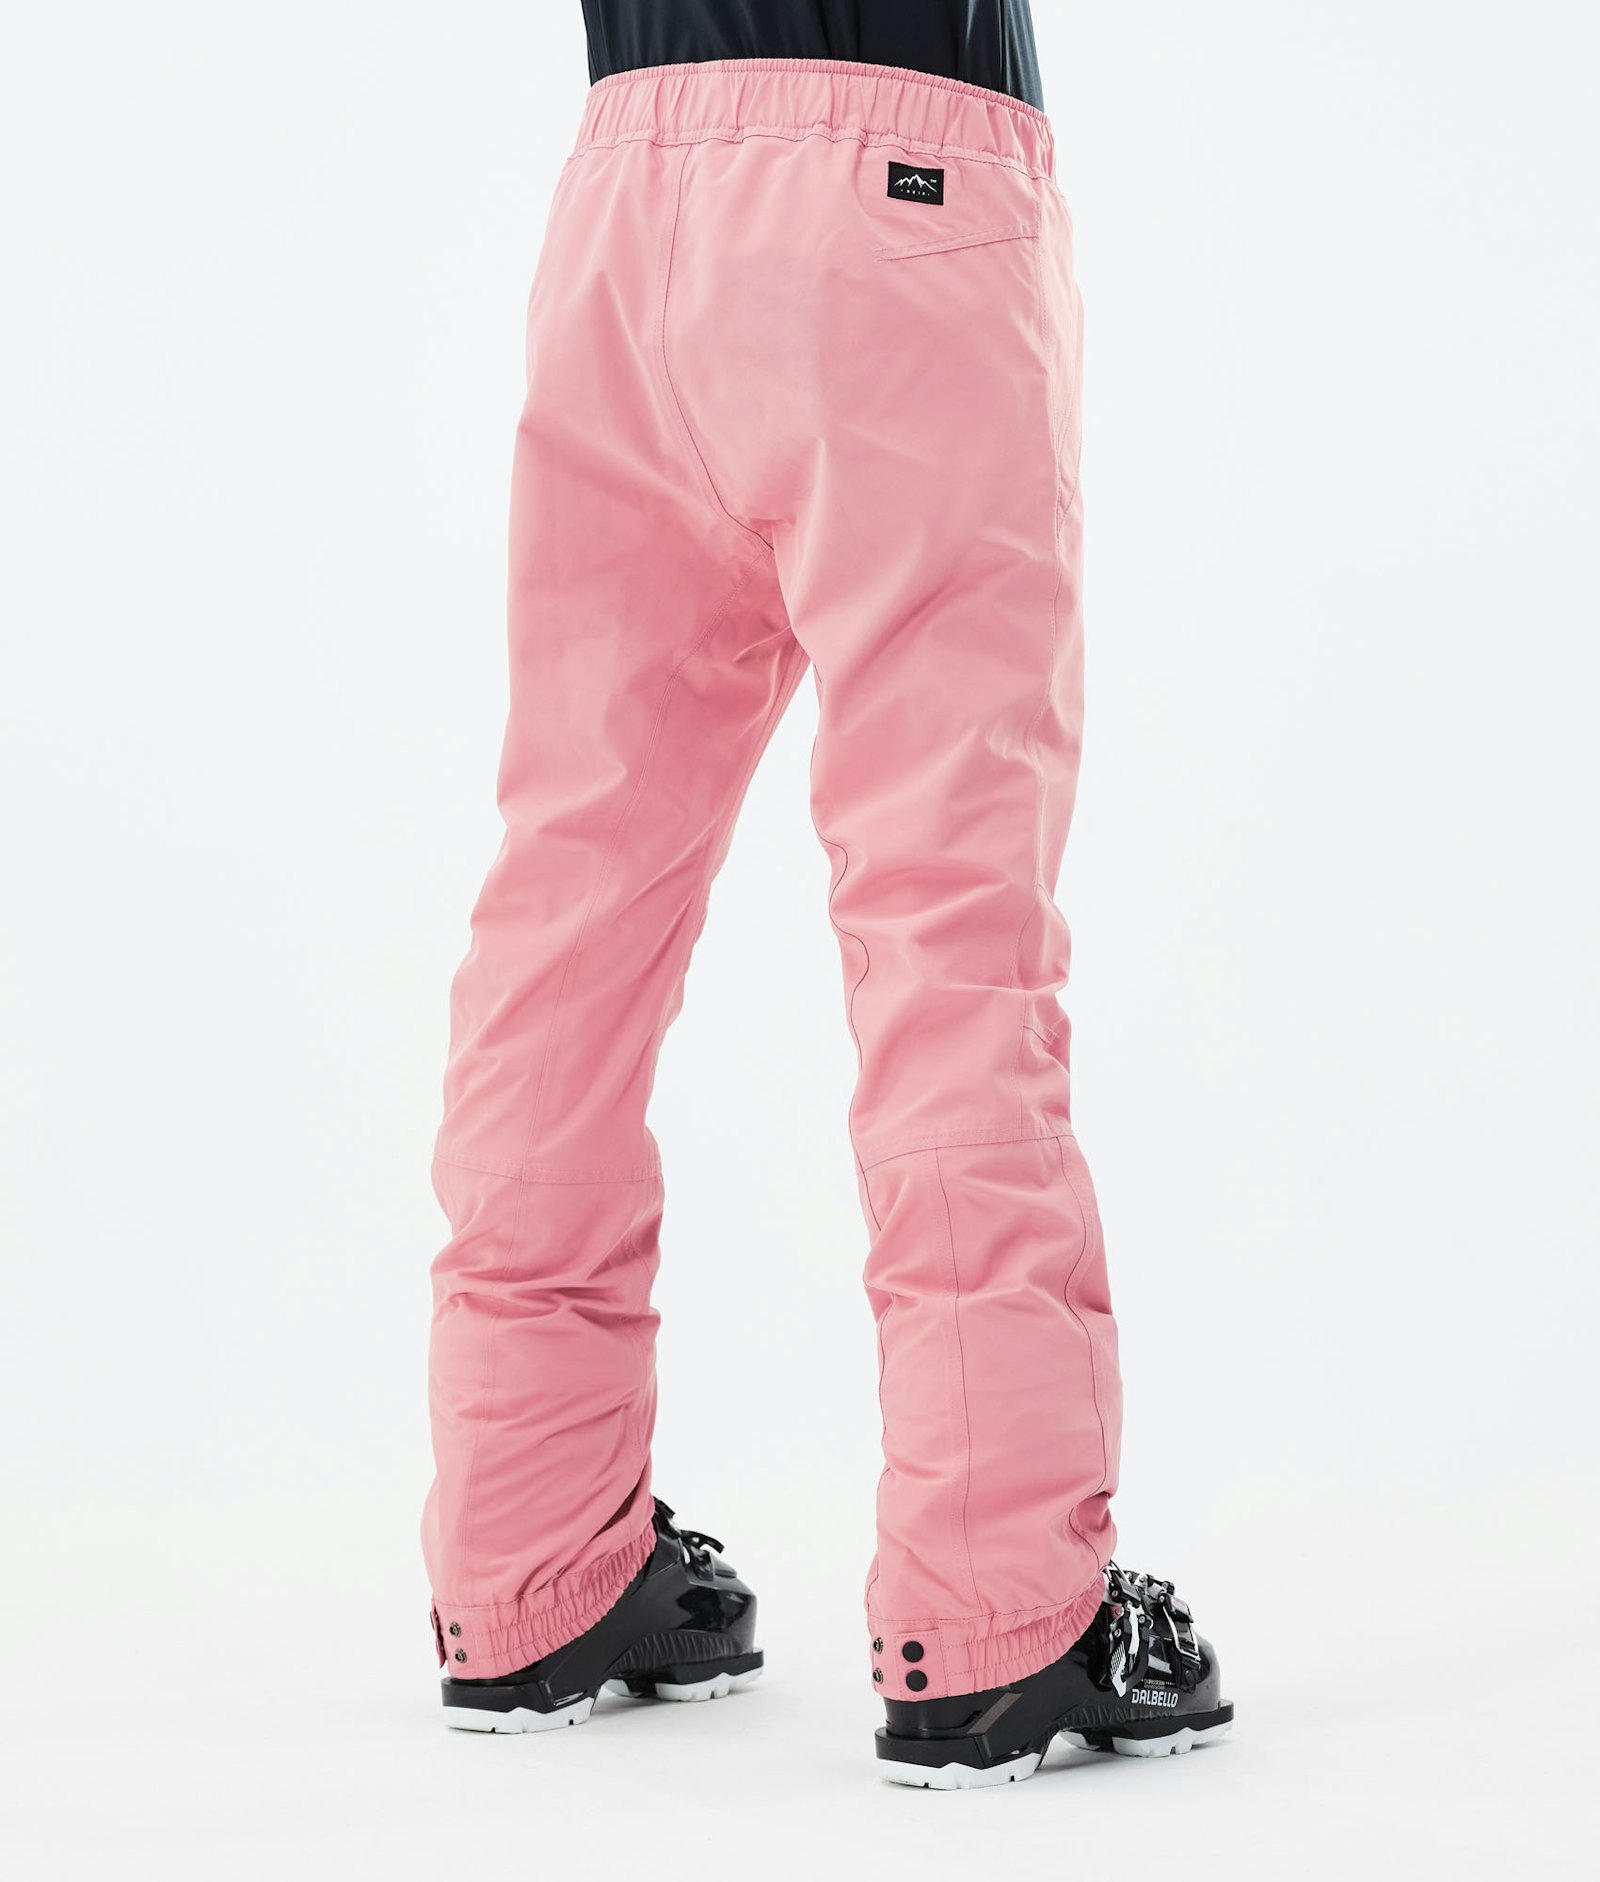 Blizzard W 2021 Ski Pants Women Pink